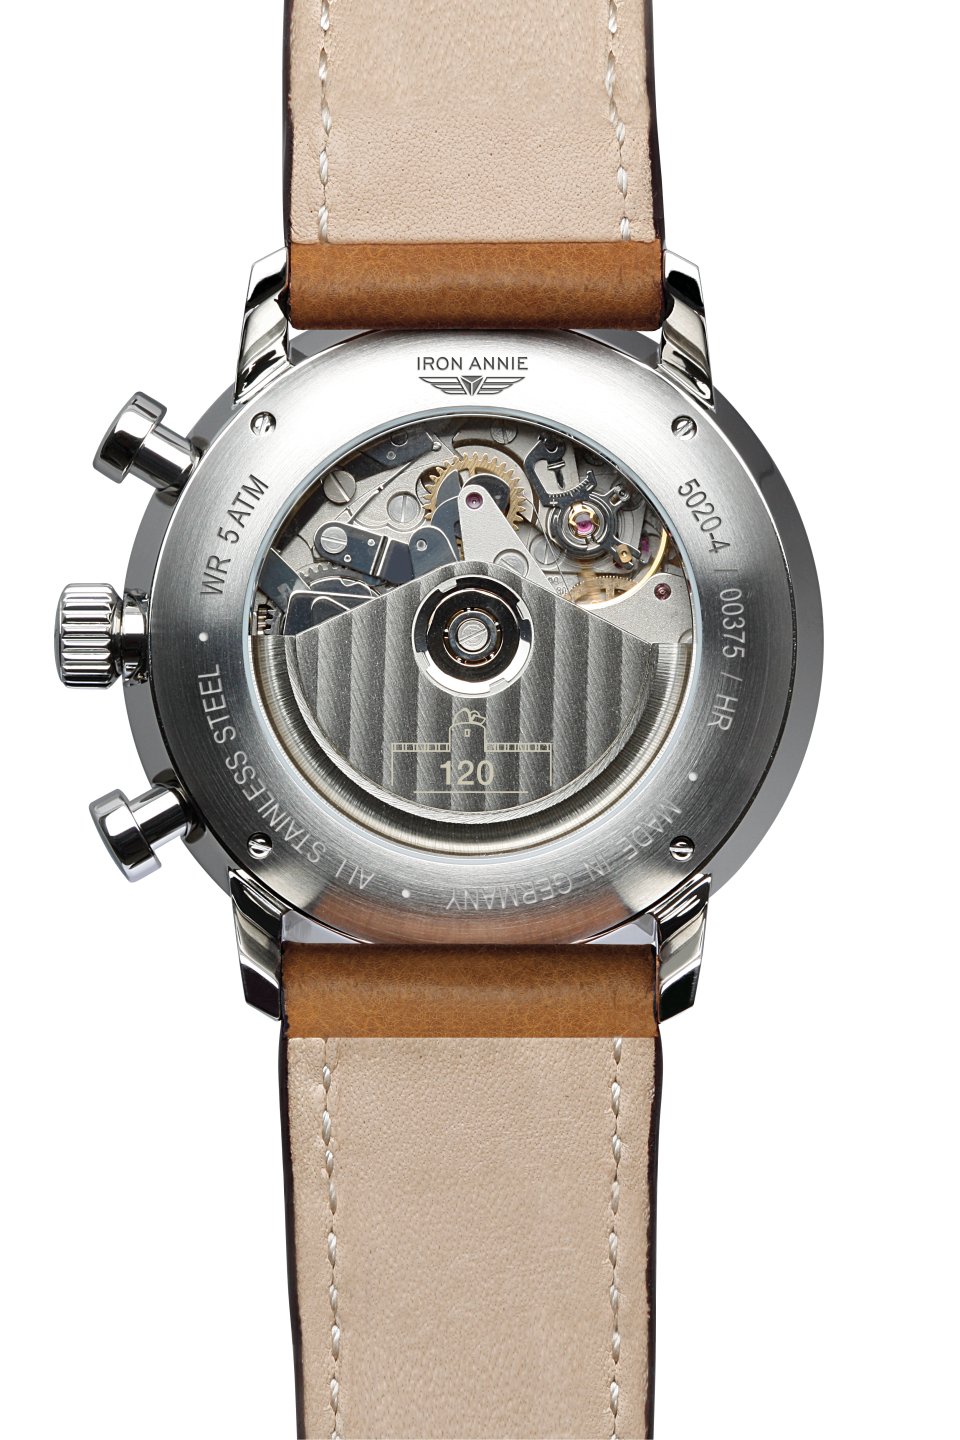 HAU, Iron Annie Bauhaus Chronometer Automatik 7750 Valjoux 7750, Steelcase  5atm, Mineral crystal | Bauhaus | Herren | IRON ANNIE Uhren | Made in  Germany